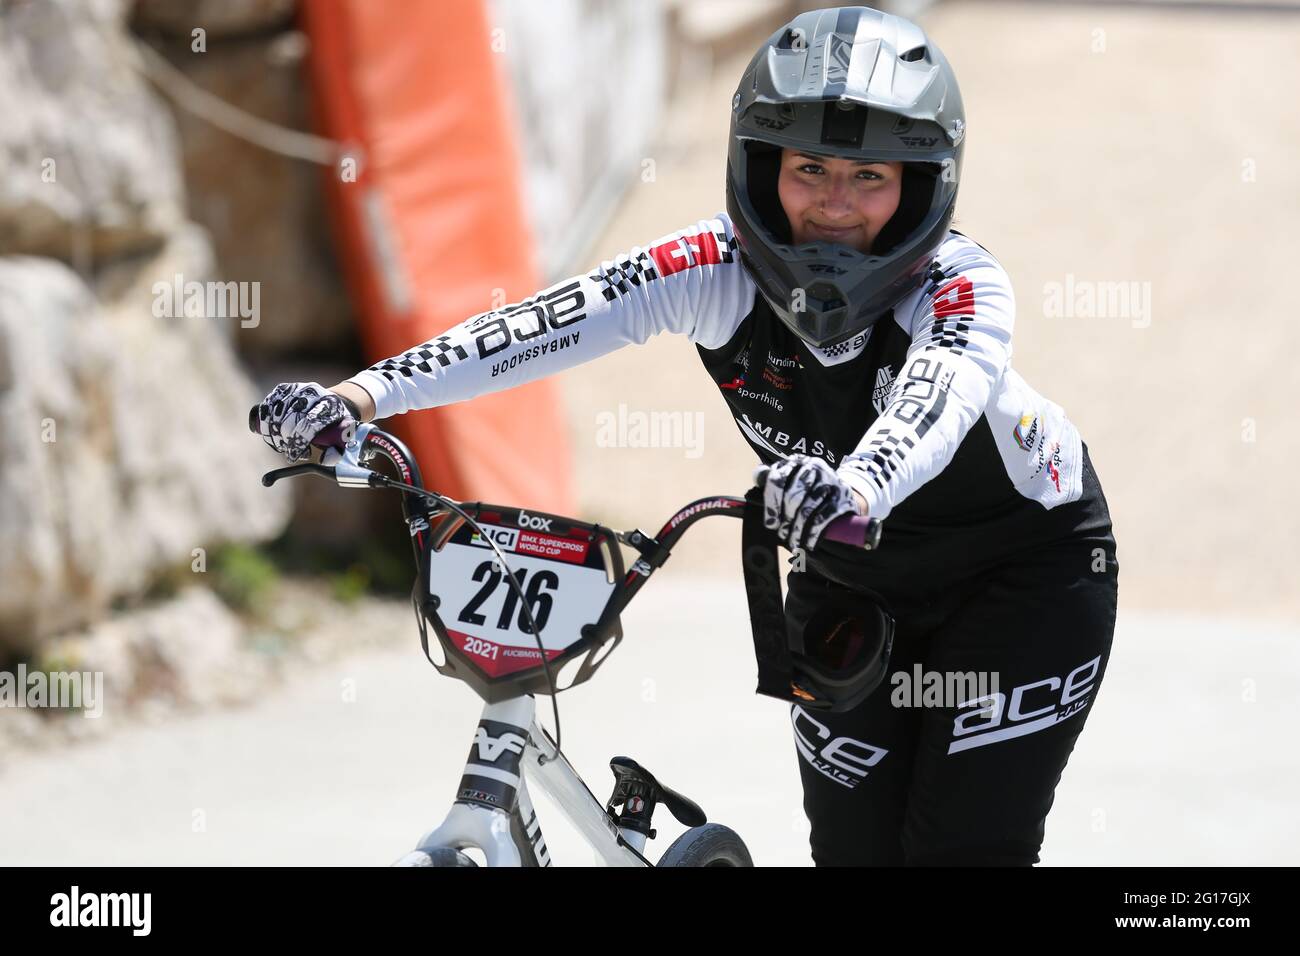 Leila HENRY, de Suisse, participe à la coupe du monde UCI BMX Supercross  Round 1 à l'arène olympique BMX le 8 mai 2021 à Vérone, en Italie Photo  Stock - Alamy